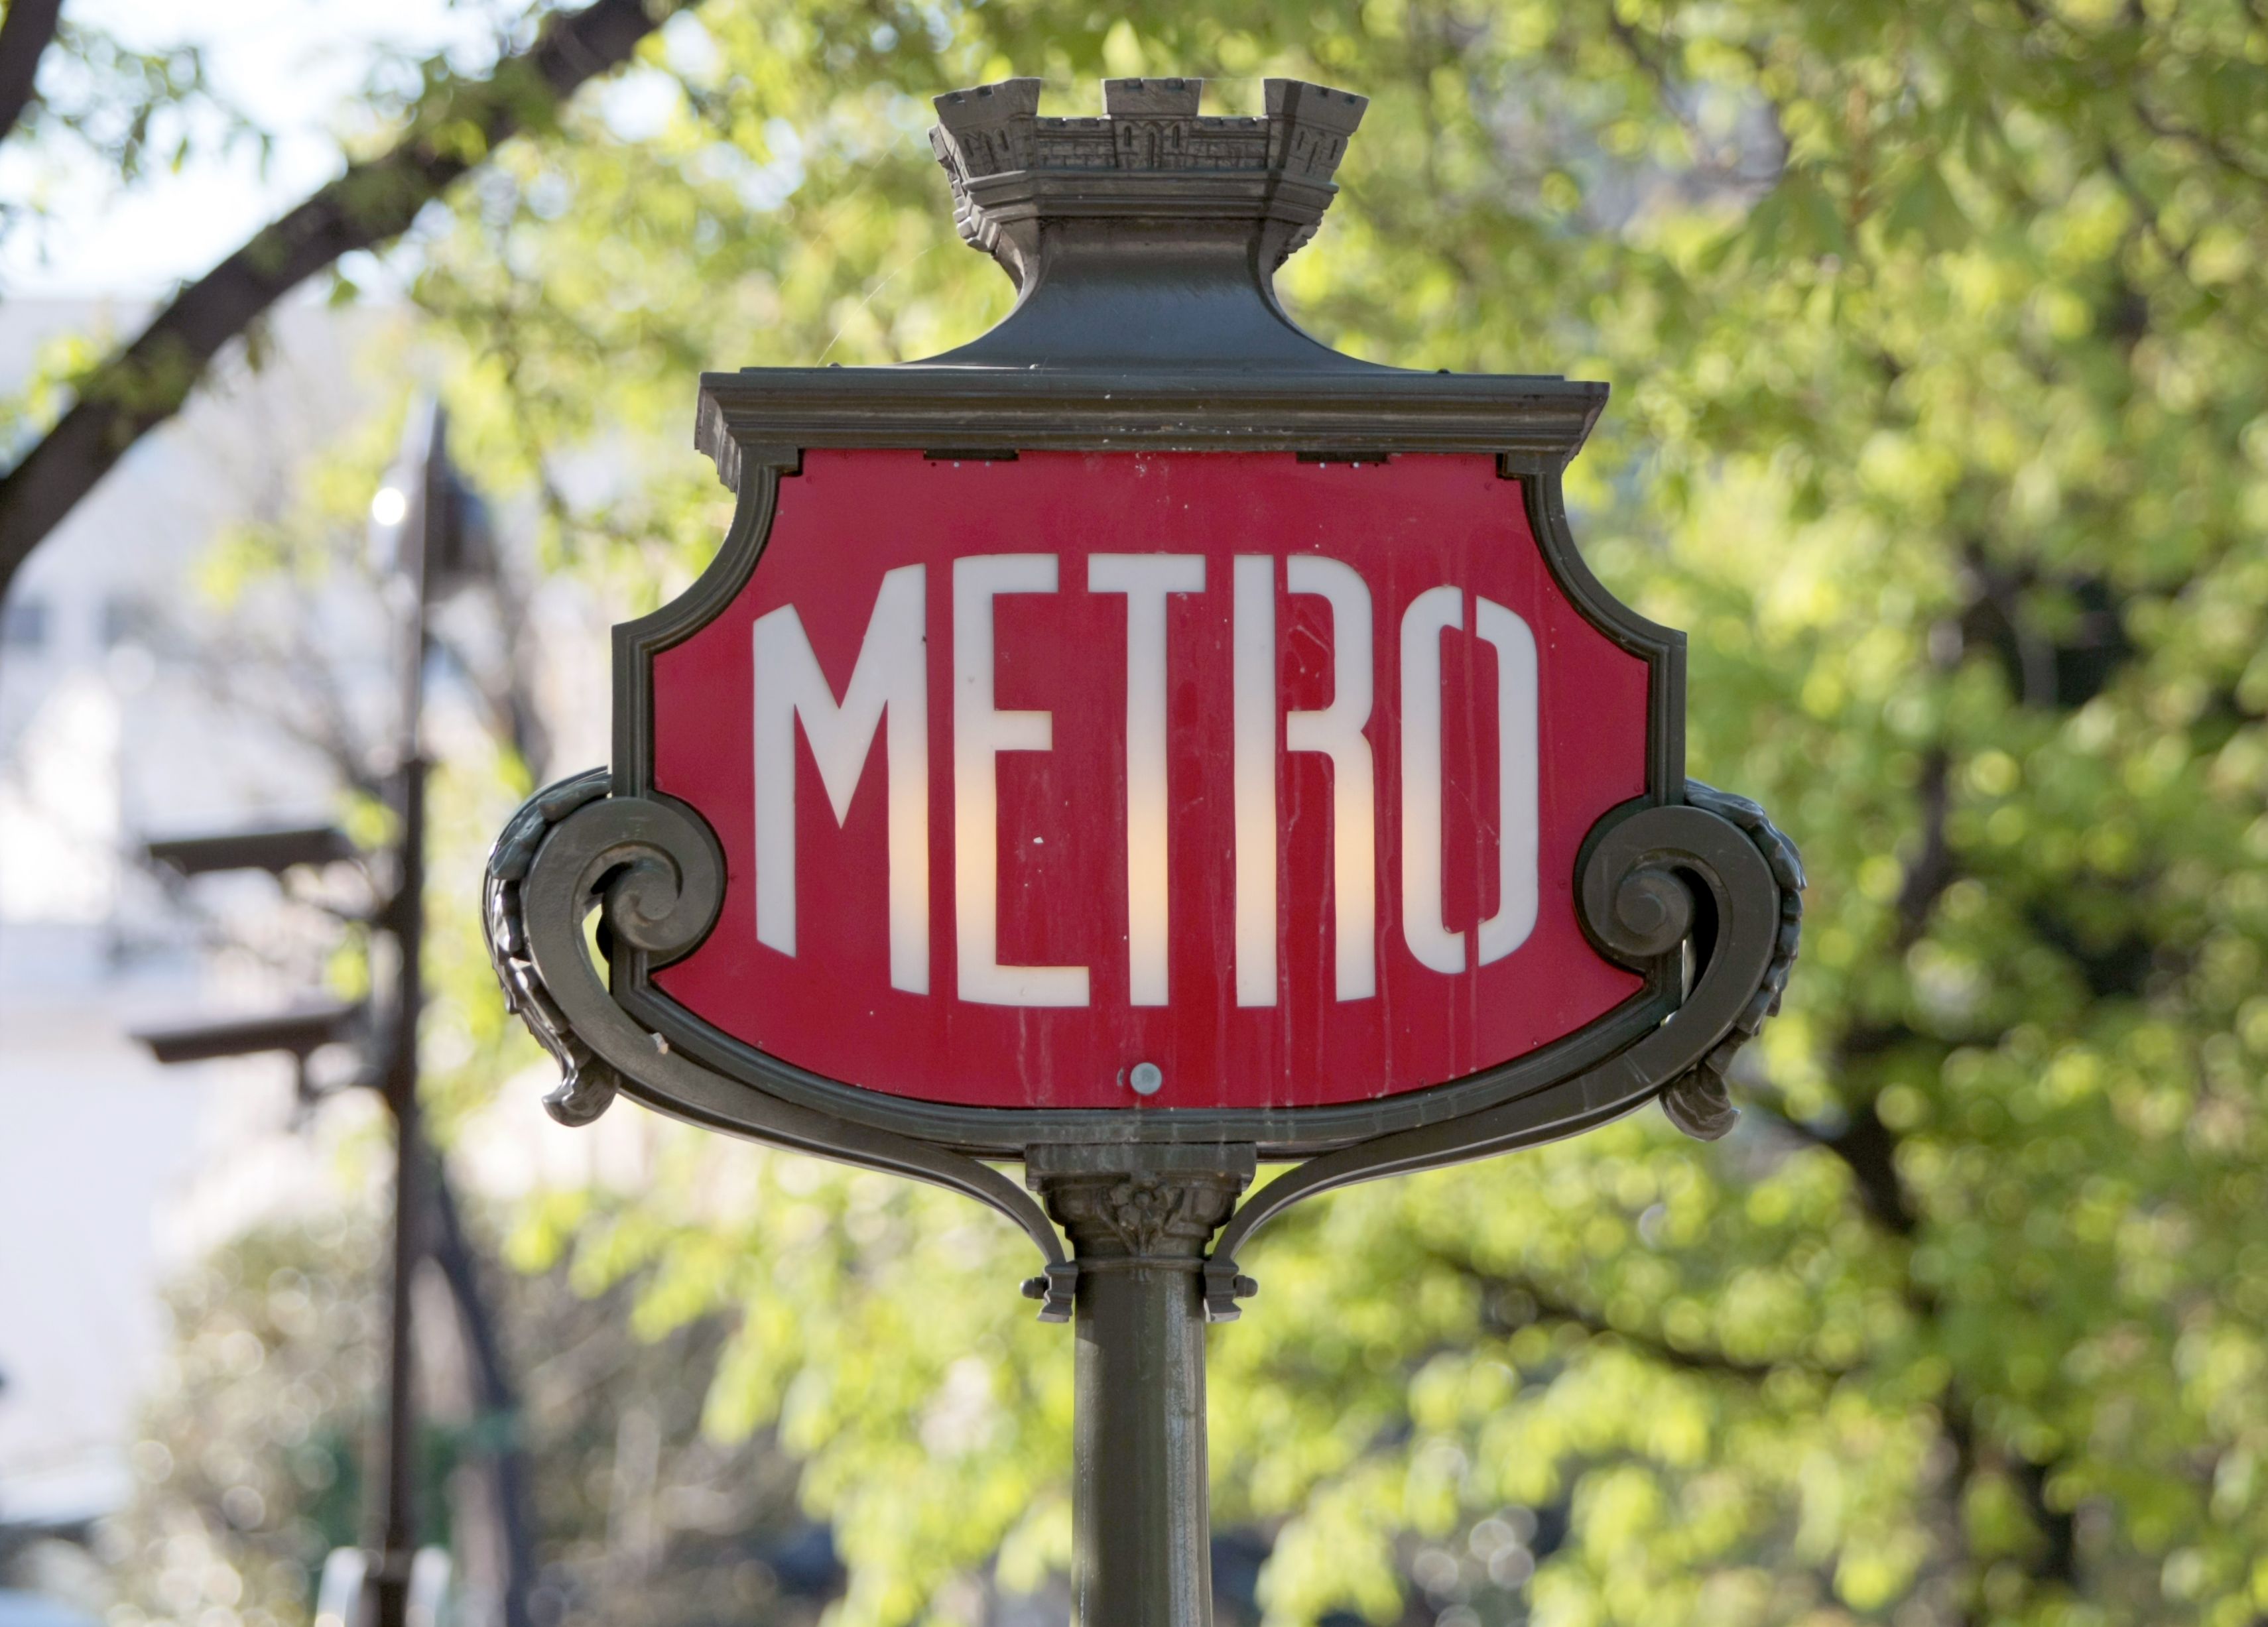 Review DIGITAL metro ! - Metro digital 3 en 1 